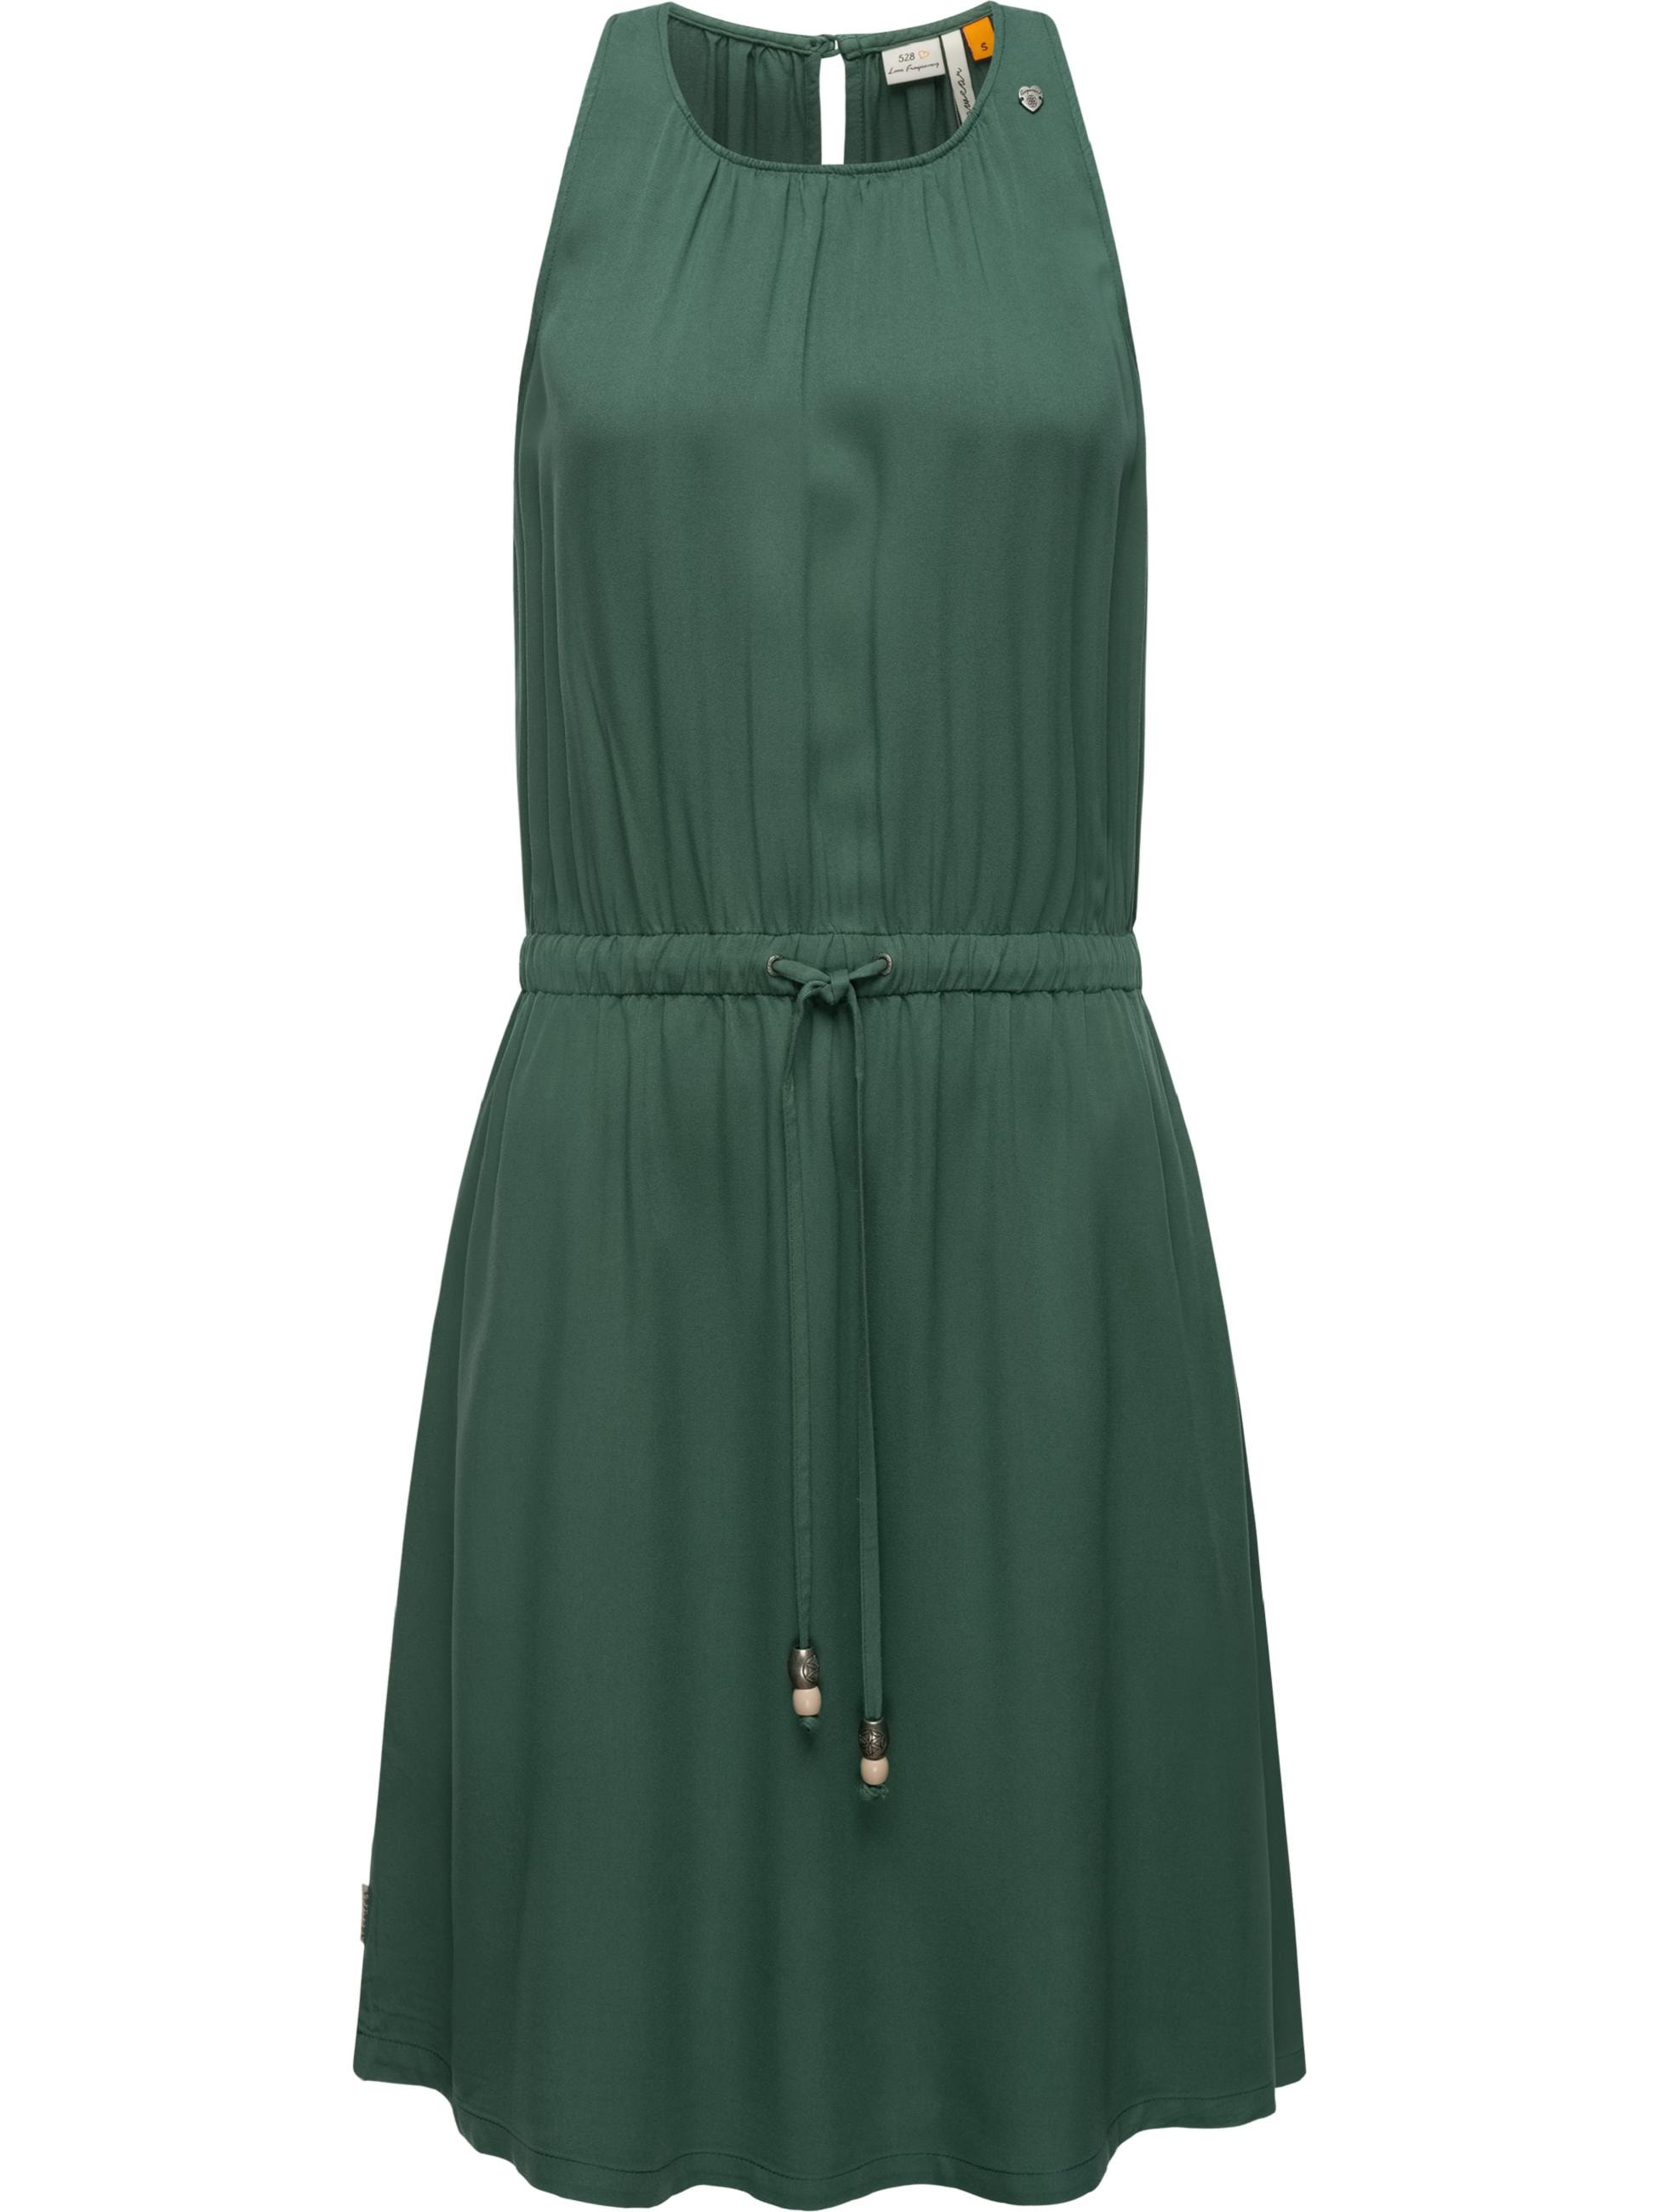 Blusenkleid »Sommerkleid Sanai«, stylisches Sommerkleid mit verspielten Details